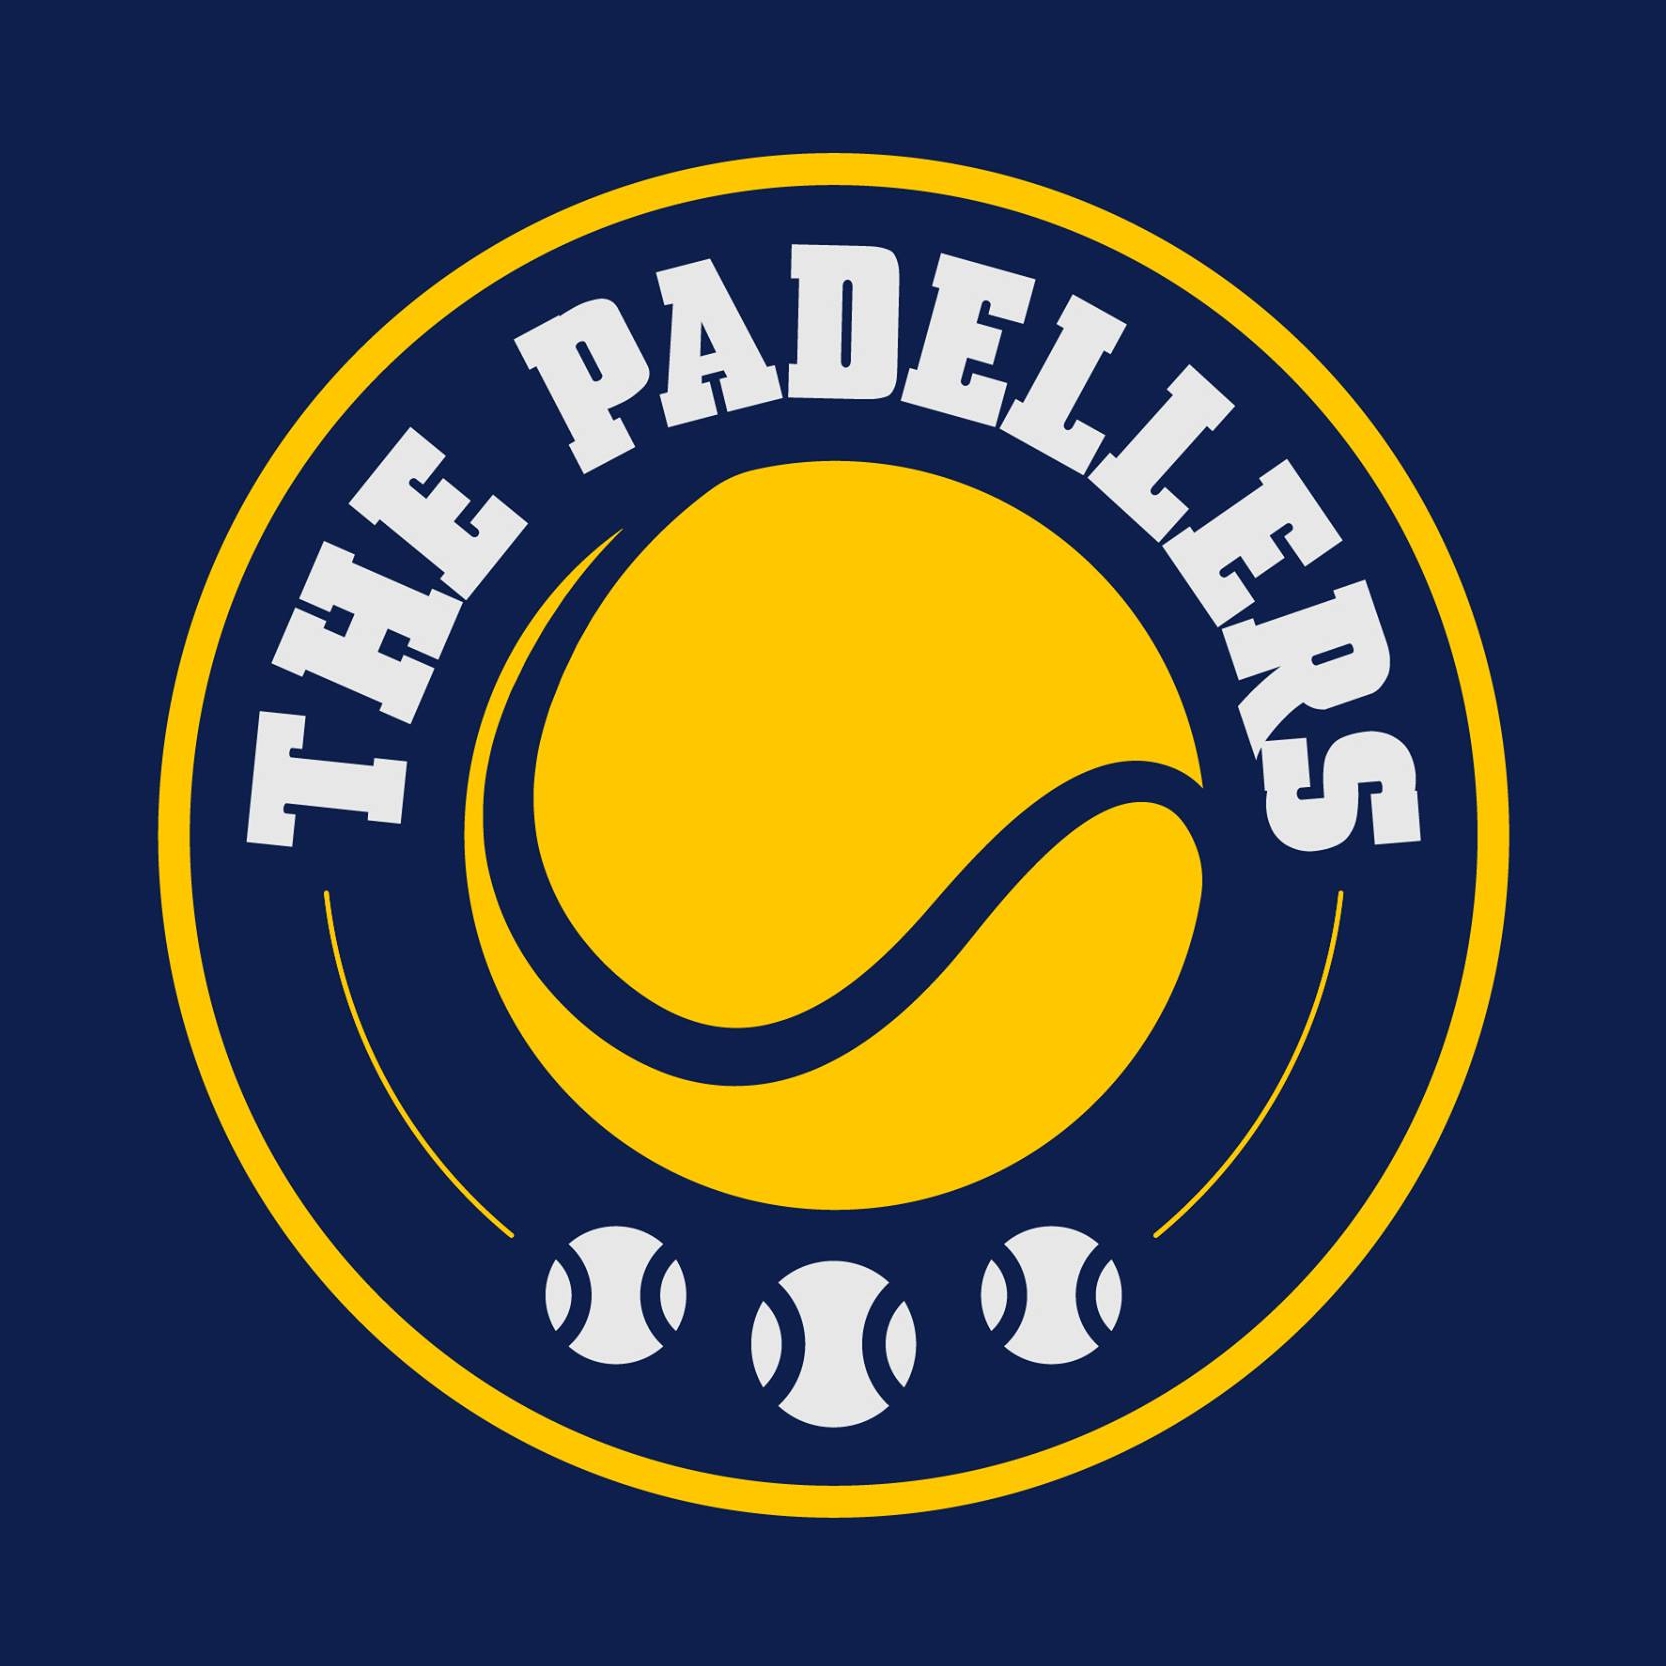 Profile image of venue The Padellers - Breda